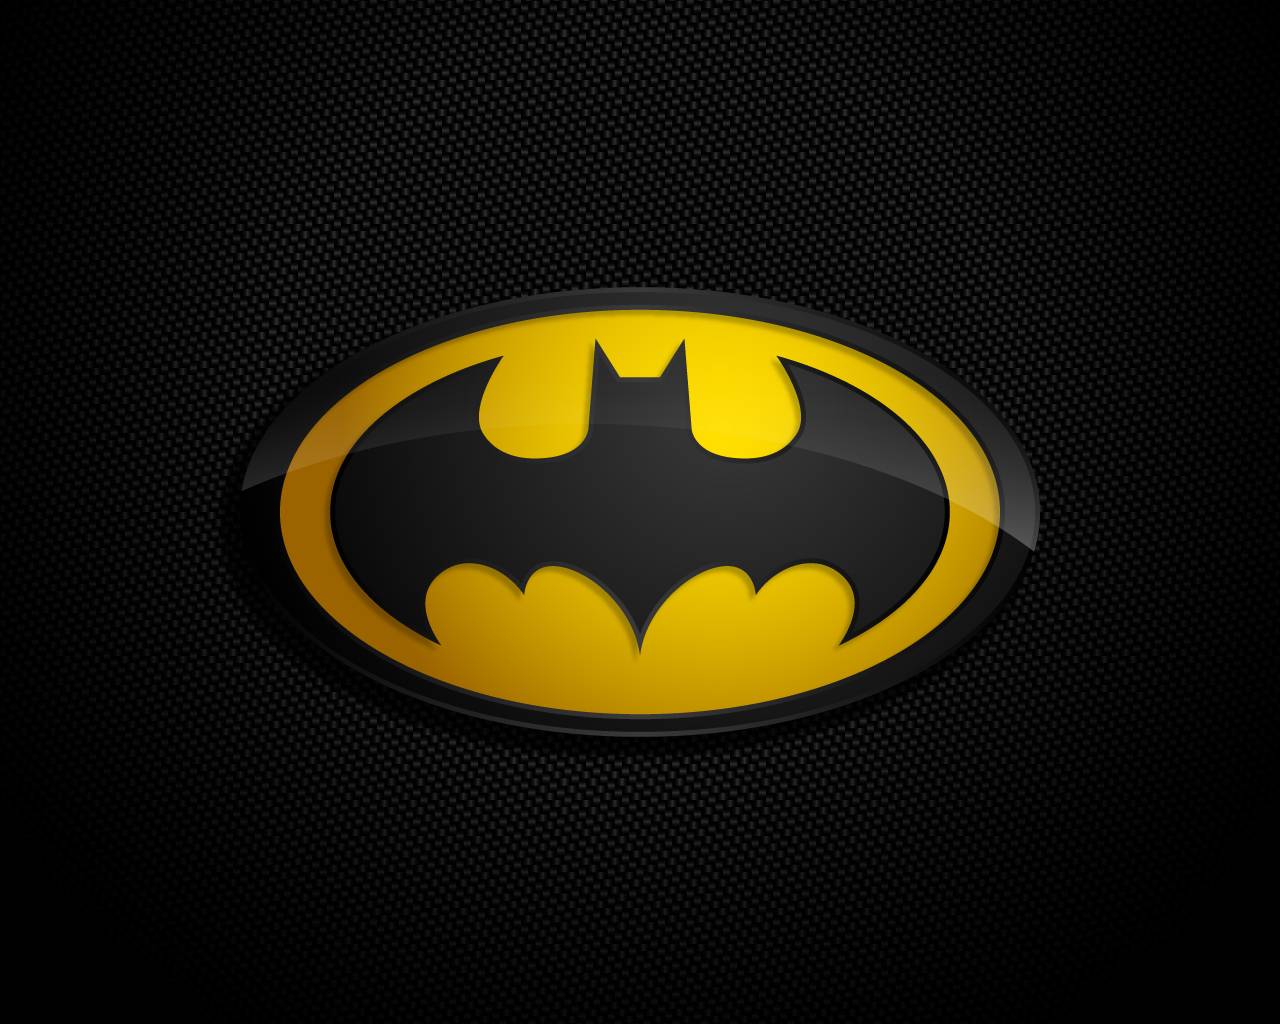 HD wallpaper: Batman illustration, Justice League, Ben Affleck, HD, 4K |  Wallpaper Flare